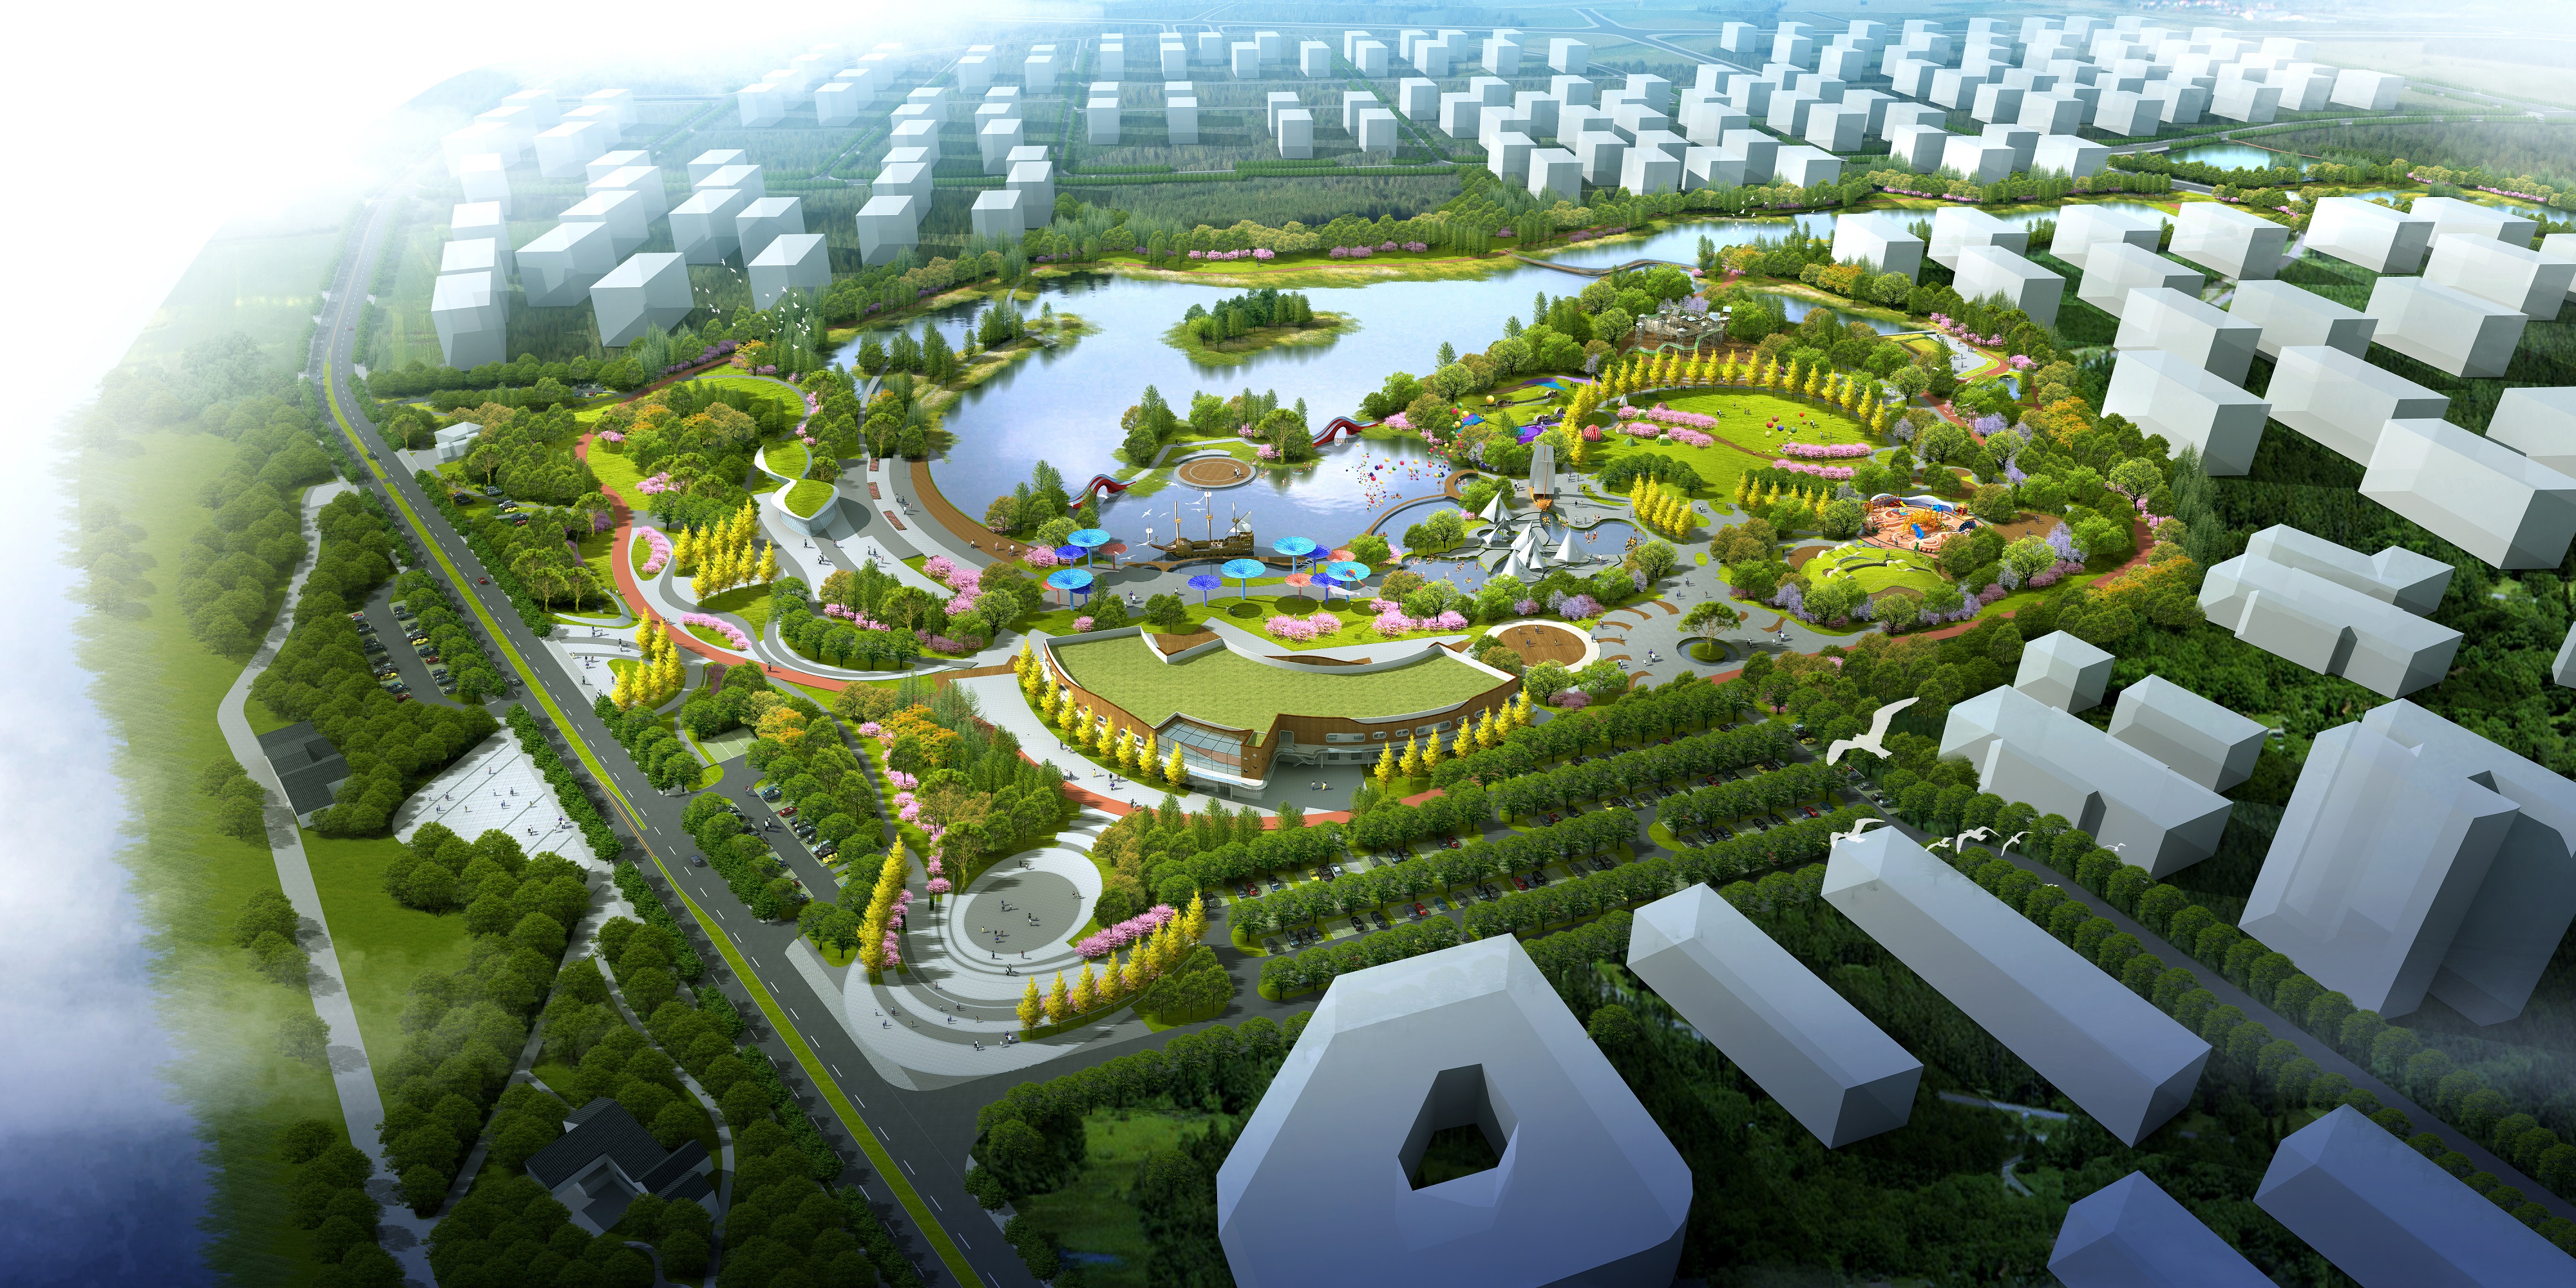 盼望在网上公布芙蓉区东湖公园3d设计图模式